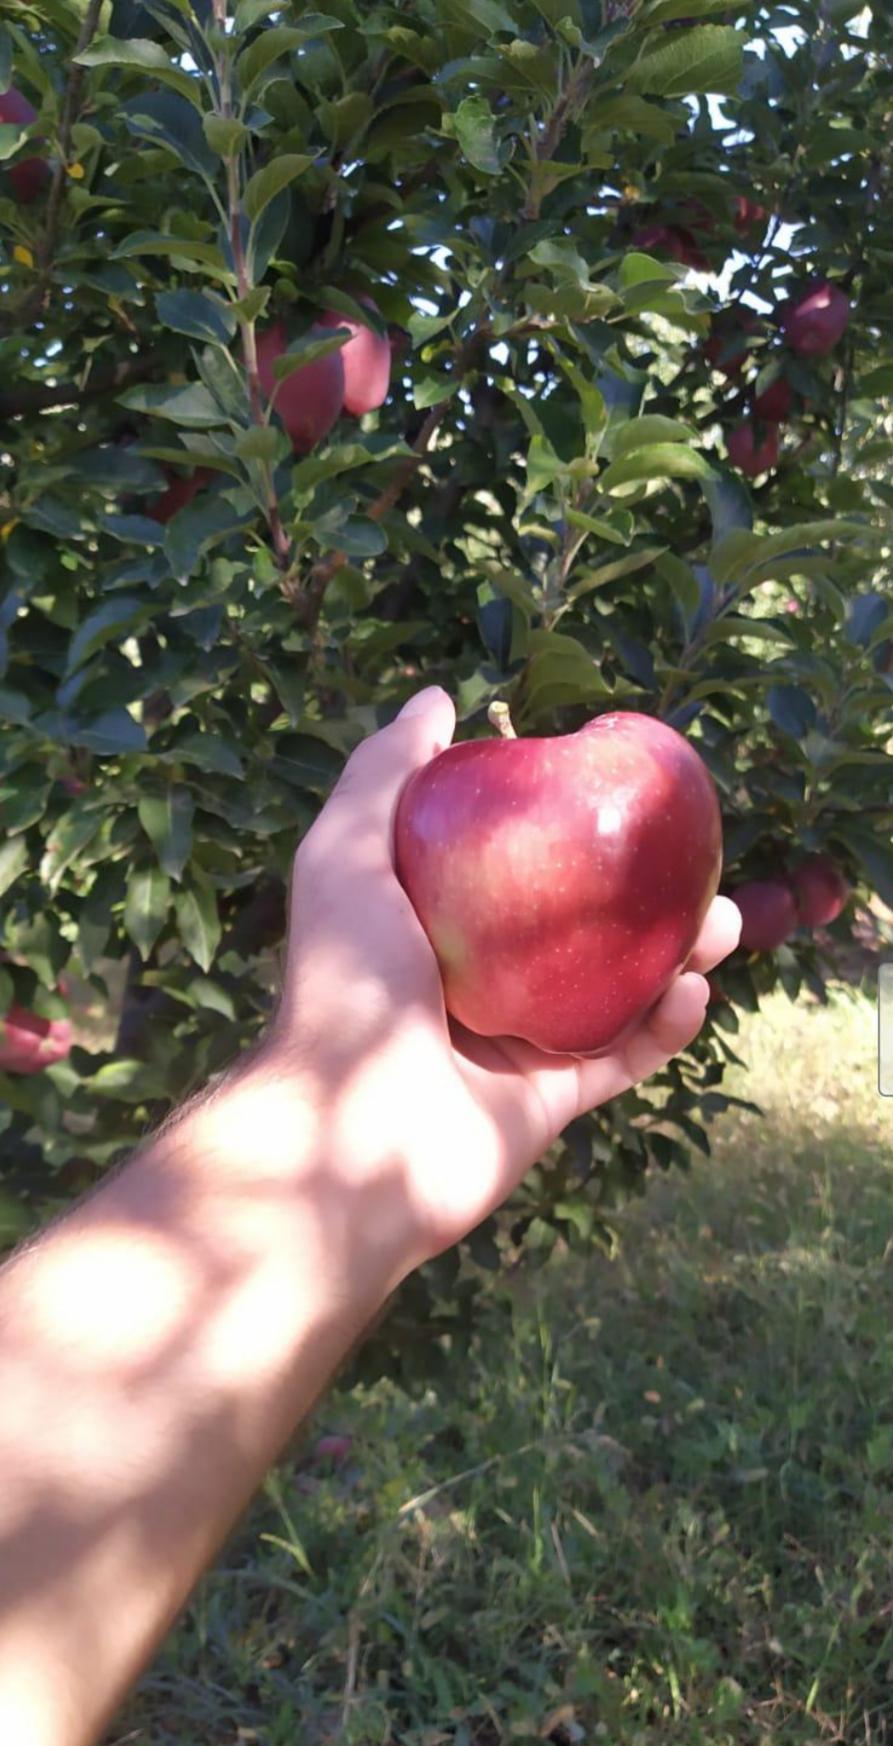 Elma - Mehmet Ali Özer tarafından verilen satılık starking delicious çeşidi elma  ilanını ve diğer satılık elma ilanlarını tarimziraat.com adresinde bulabilirsiniz